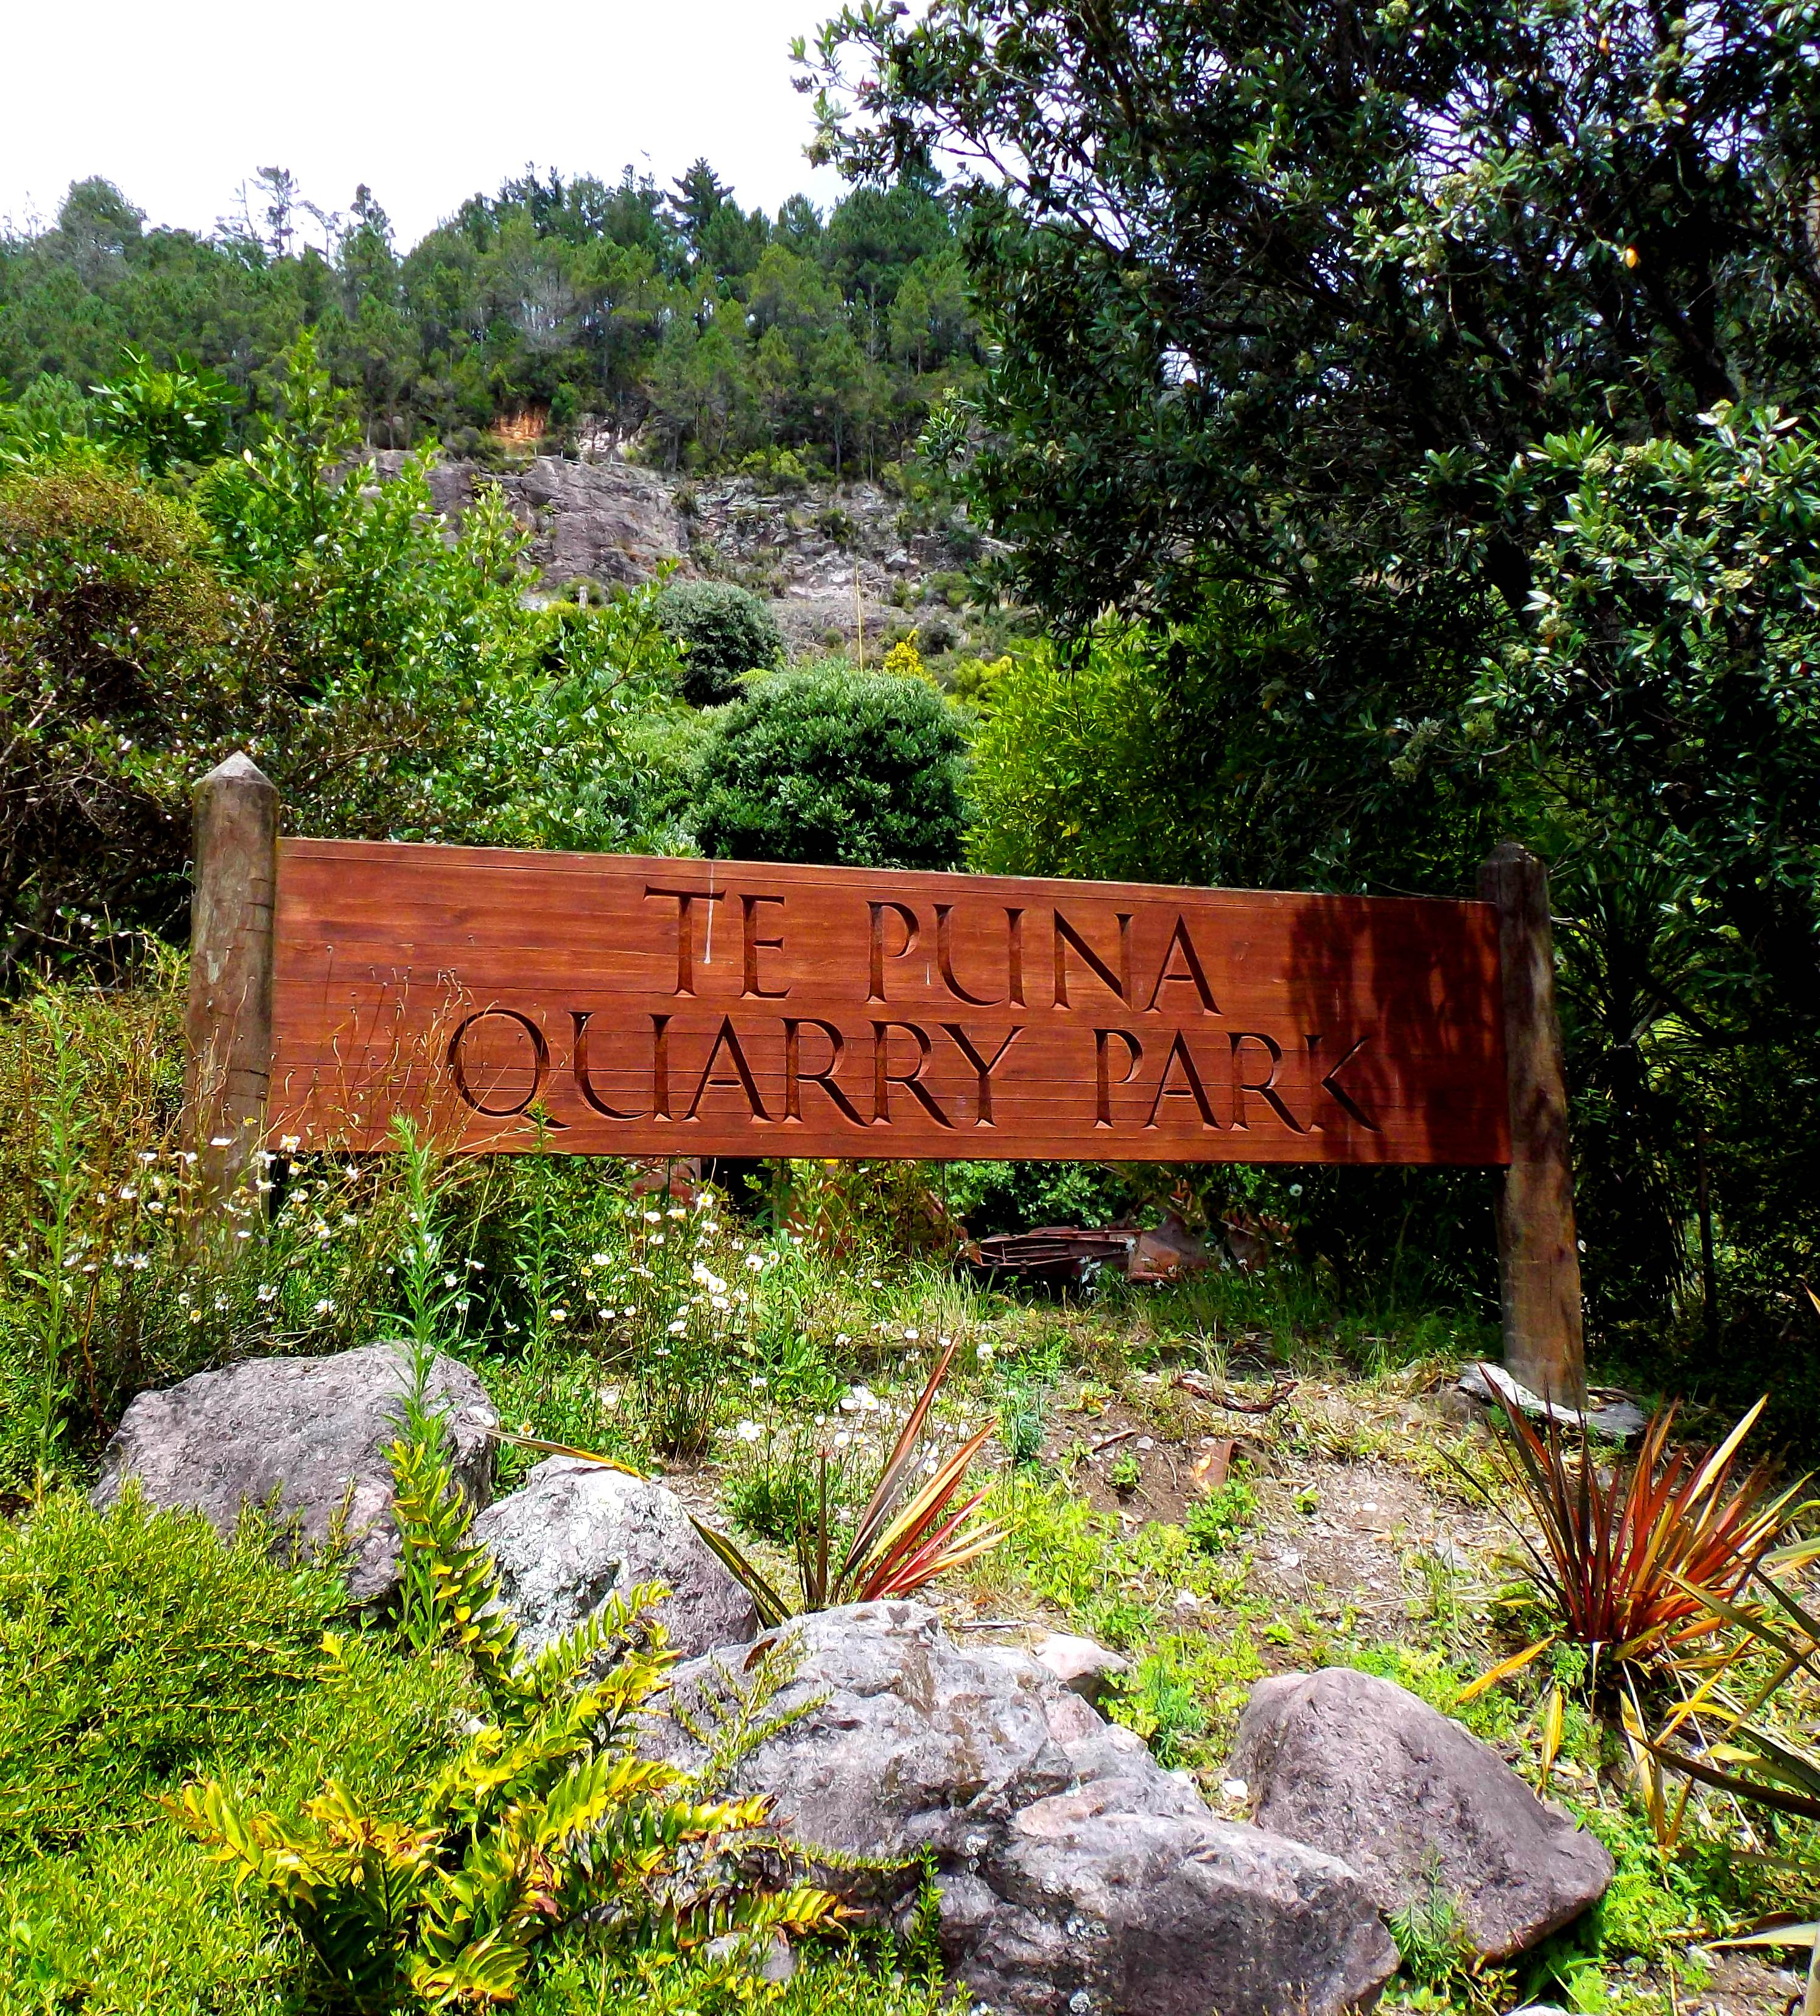 Te Puna Quarry Park